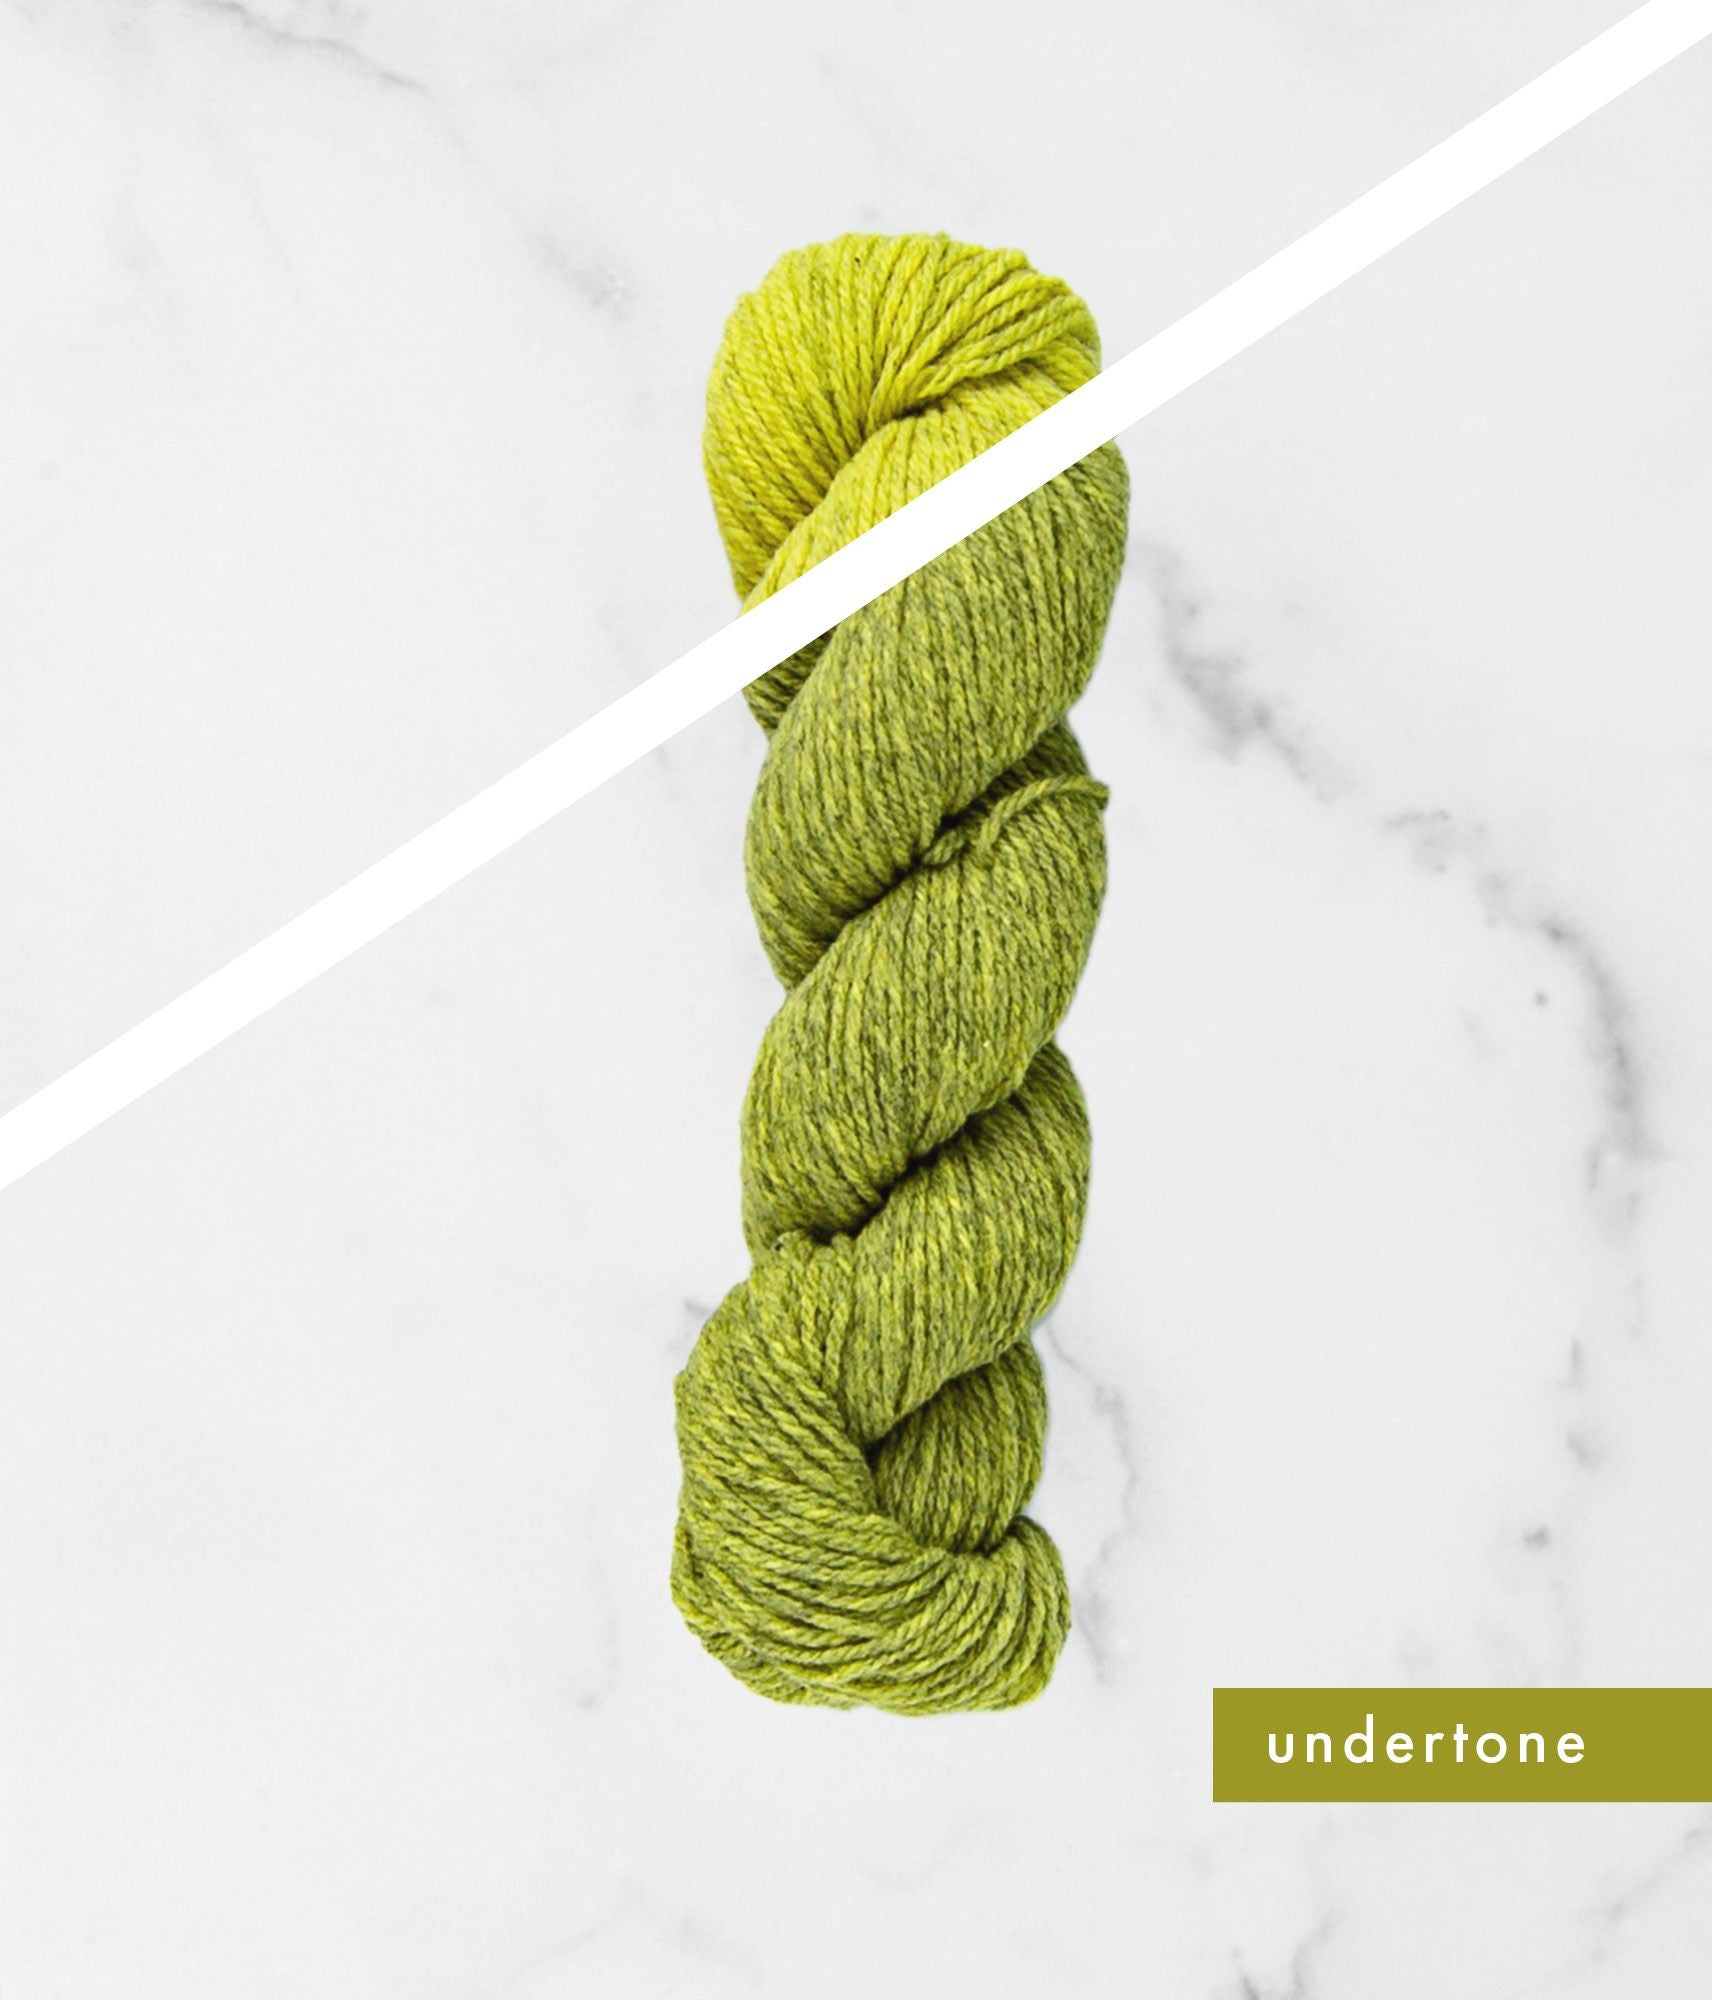 Green overtone and undertone BT Tones hanks of yarn